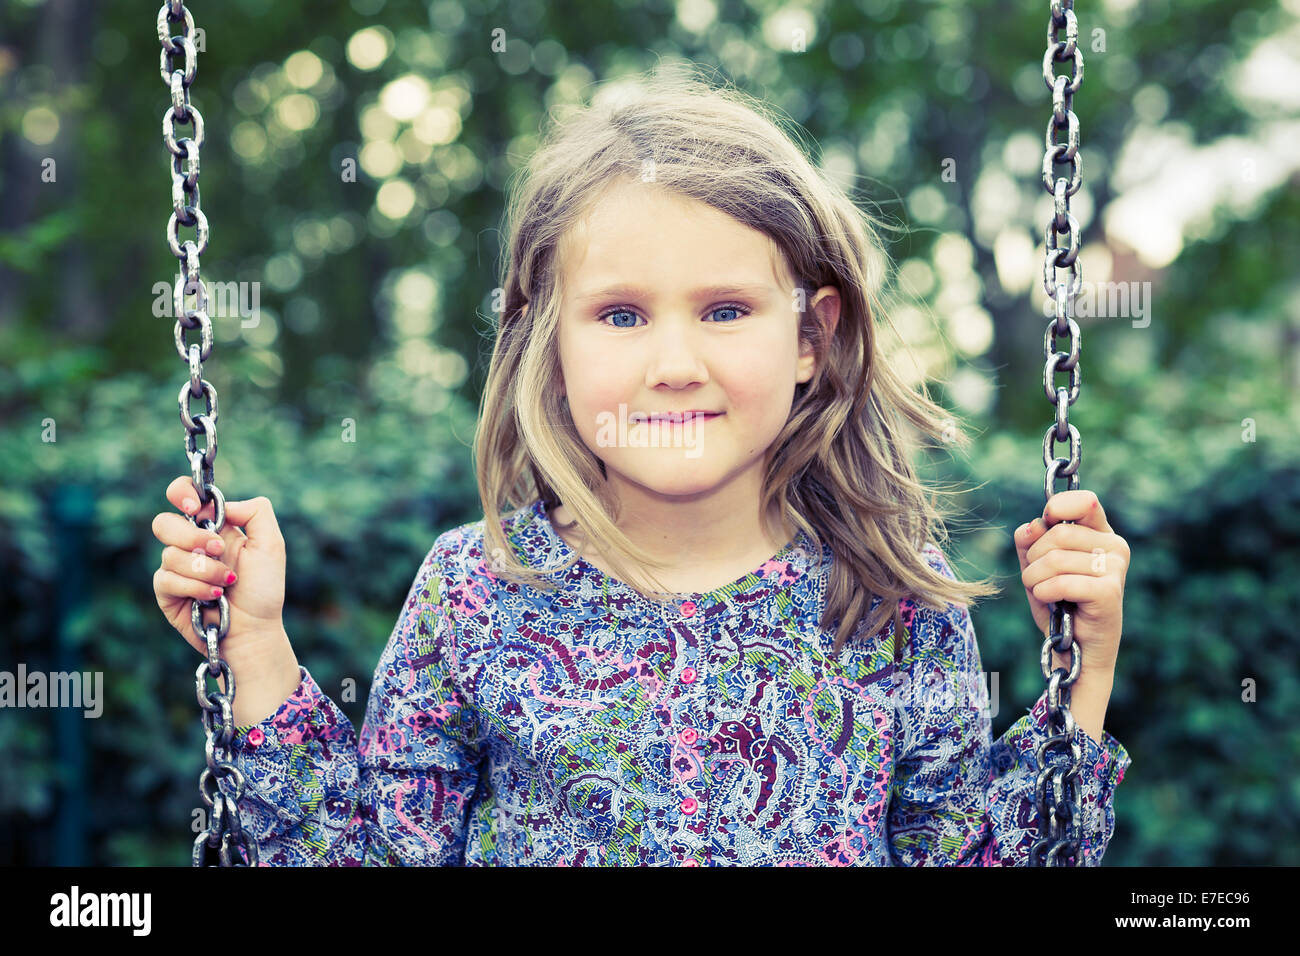 Girl on swing in summer park Stock Photo